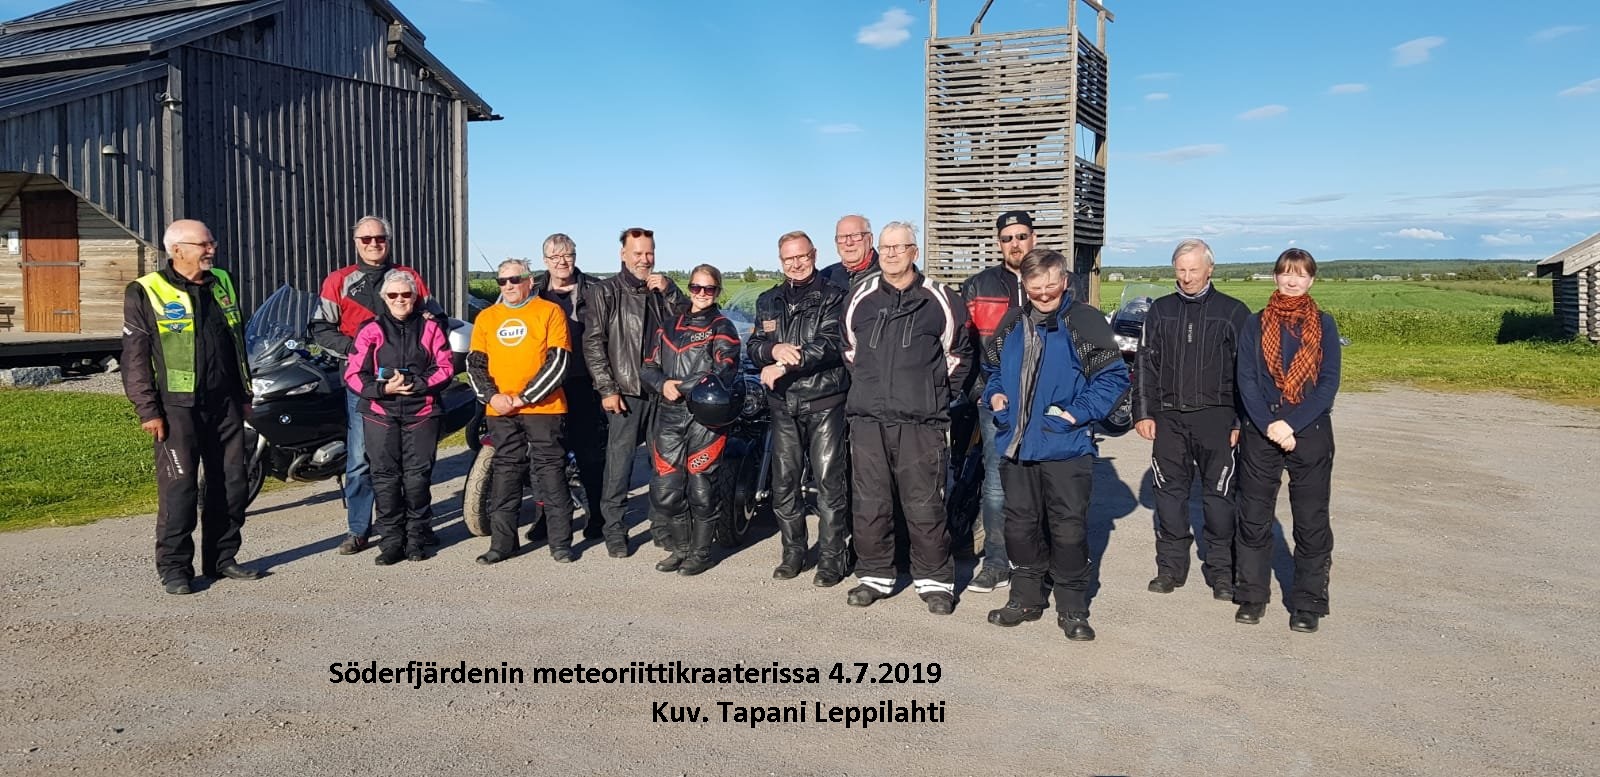 Eteläpohjalaiset motoristit matkalla Sundomin kraaterissa 4.7.2019